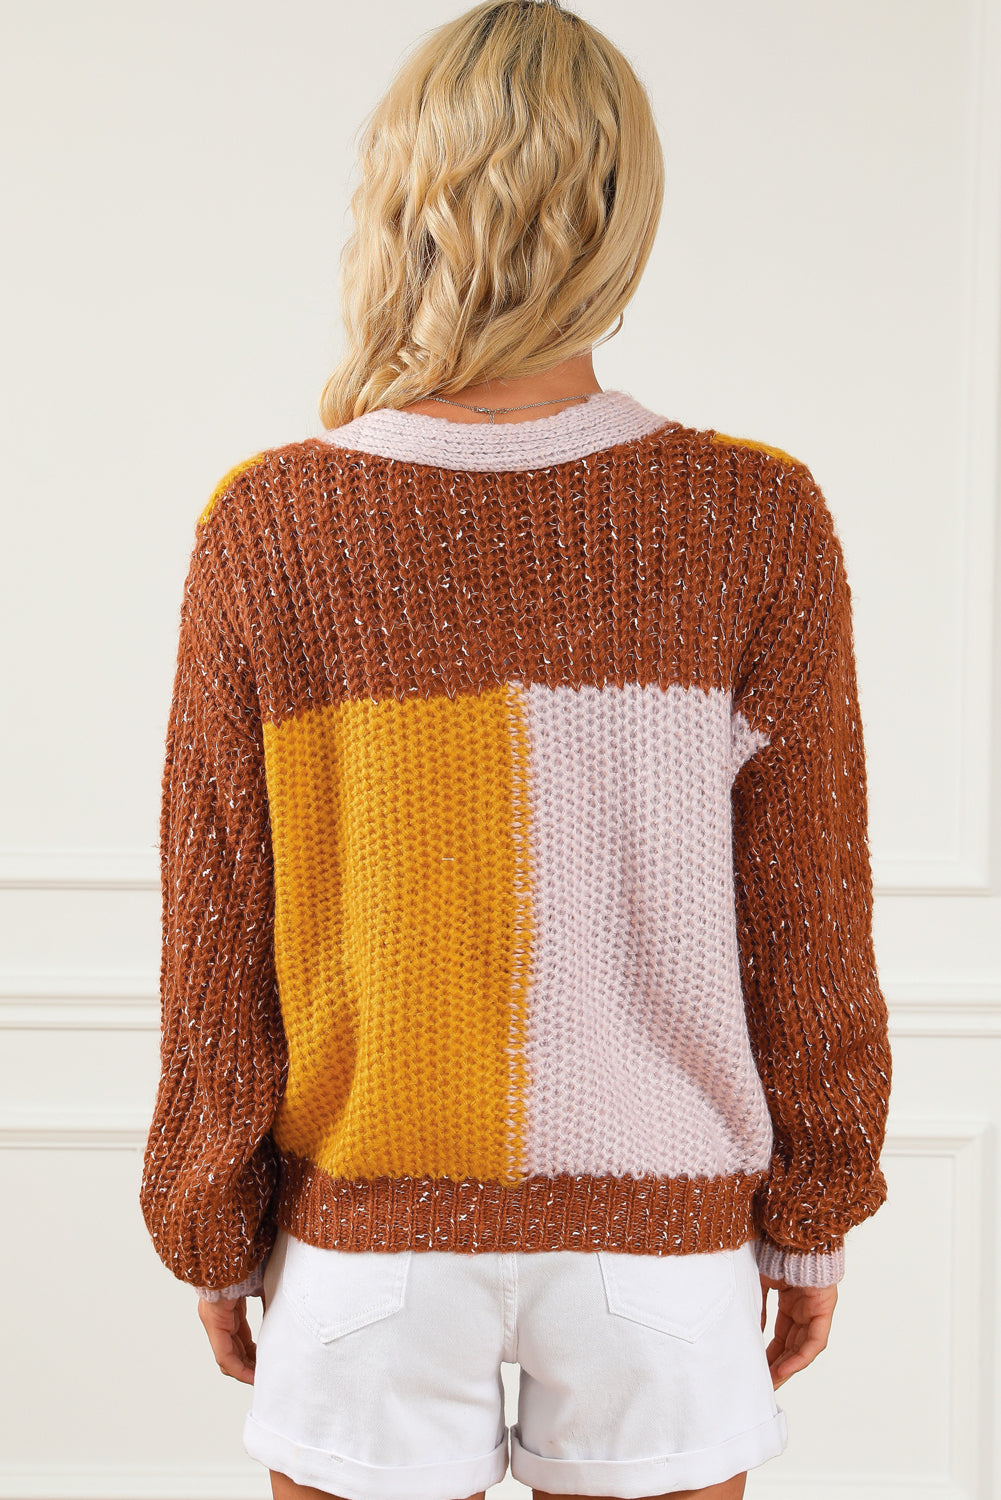 Rjav pulover z dvojnimi žepi in barvnimi bloki